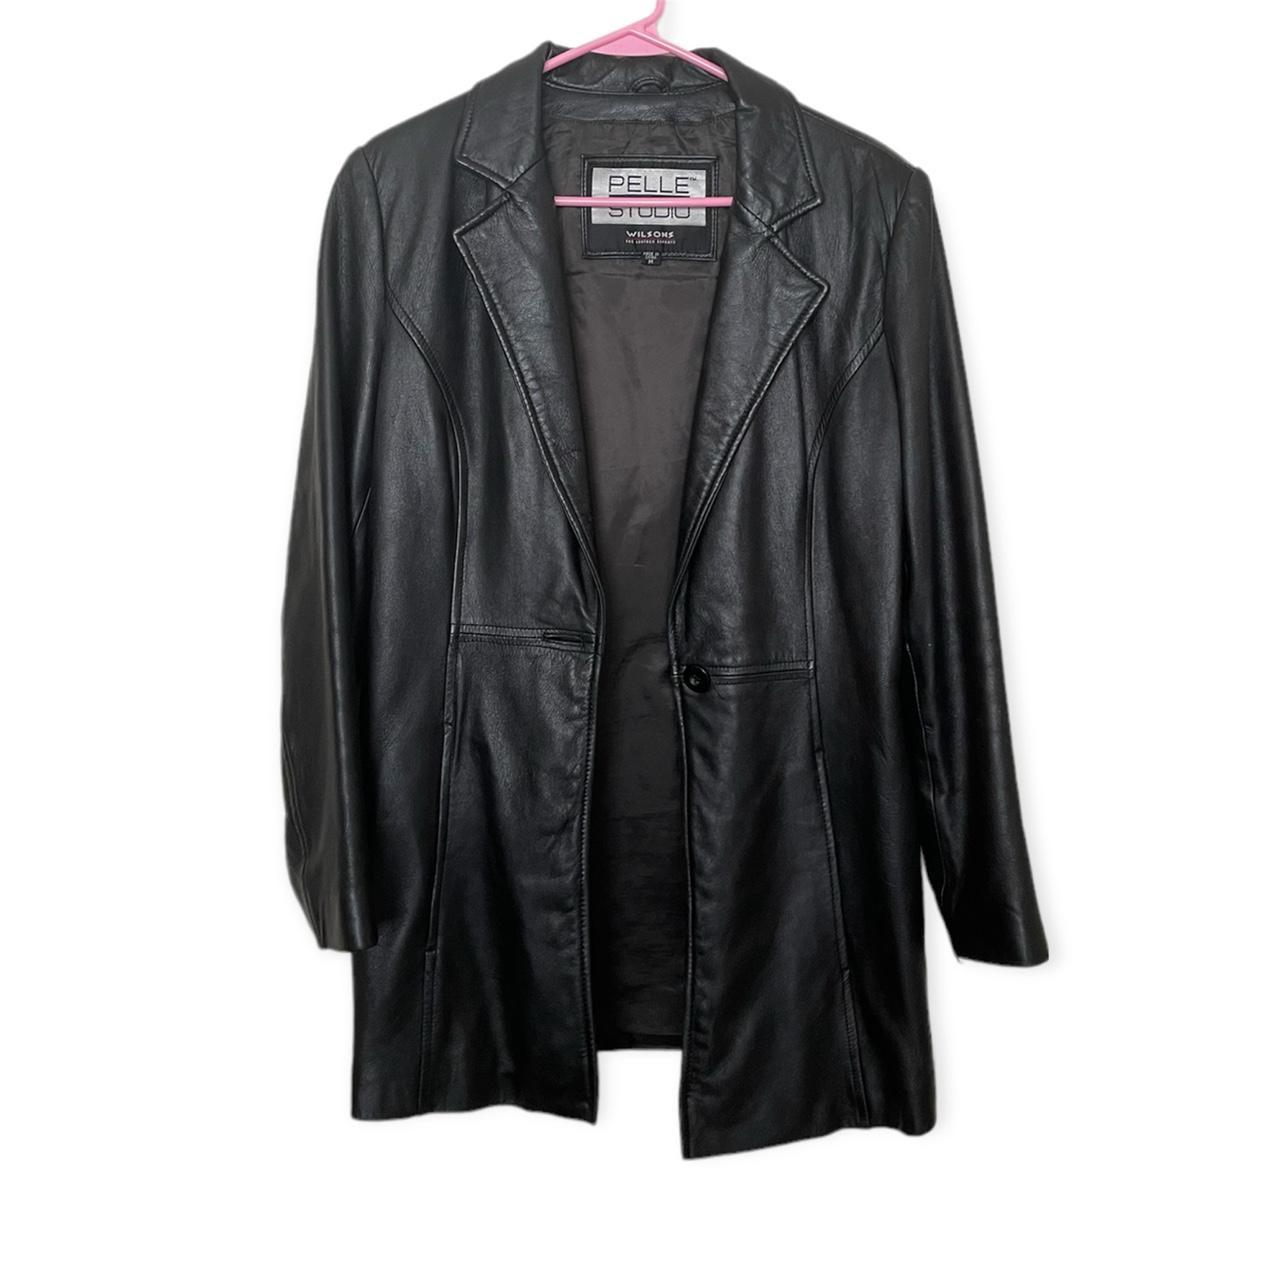 90s genuine leather blazer jacket - 90s Wilson's... - Depop